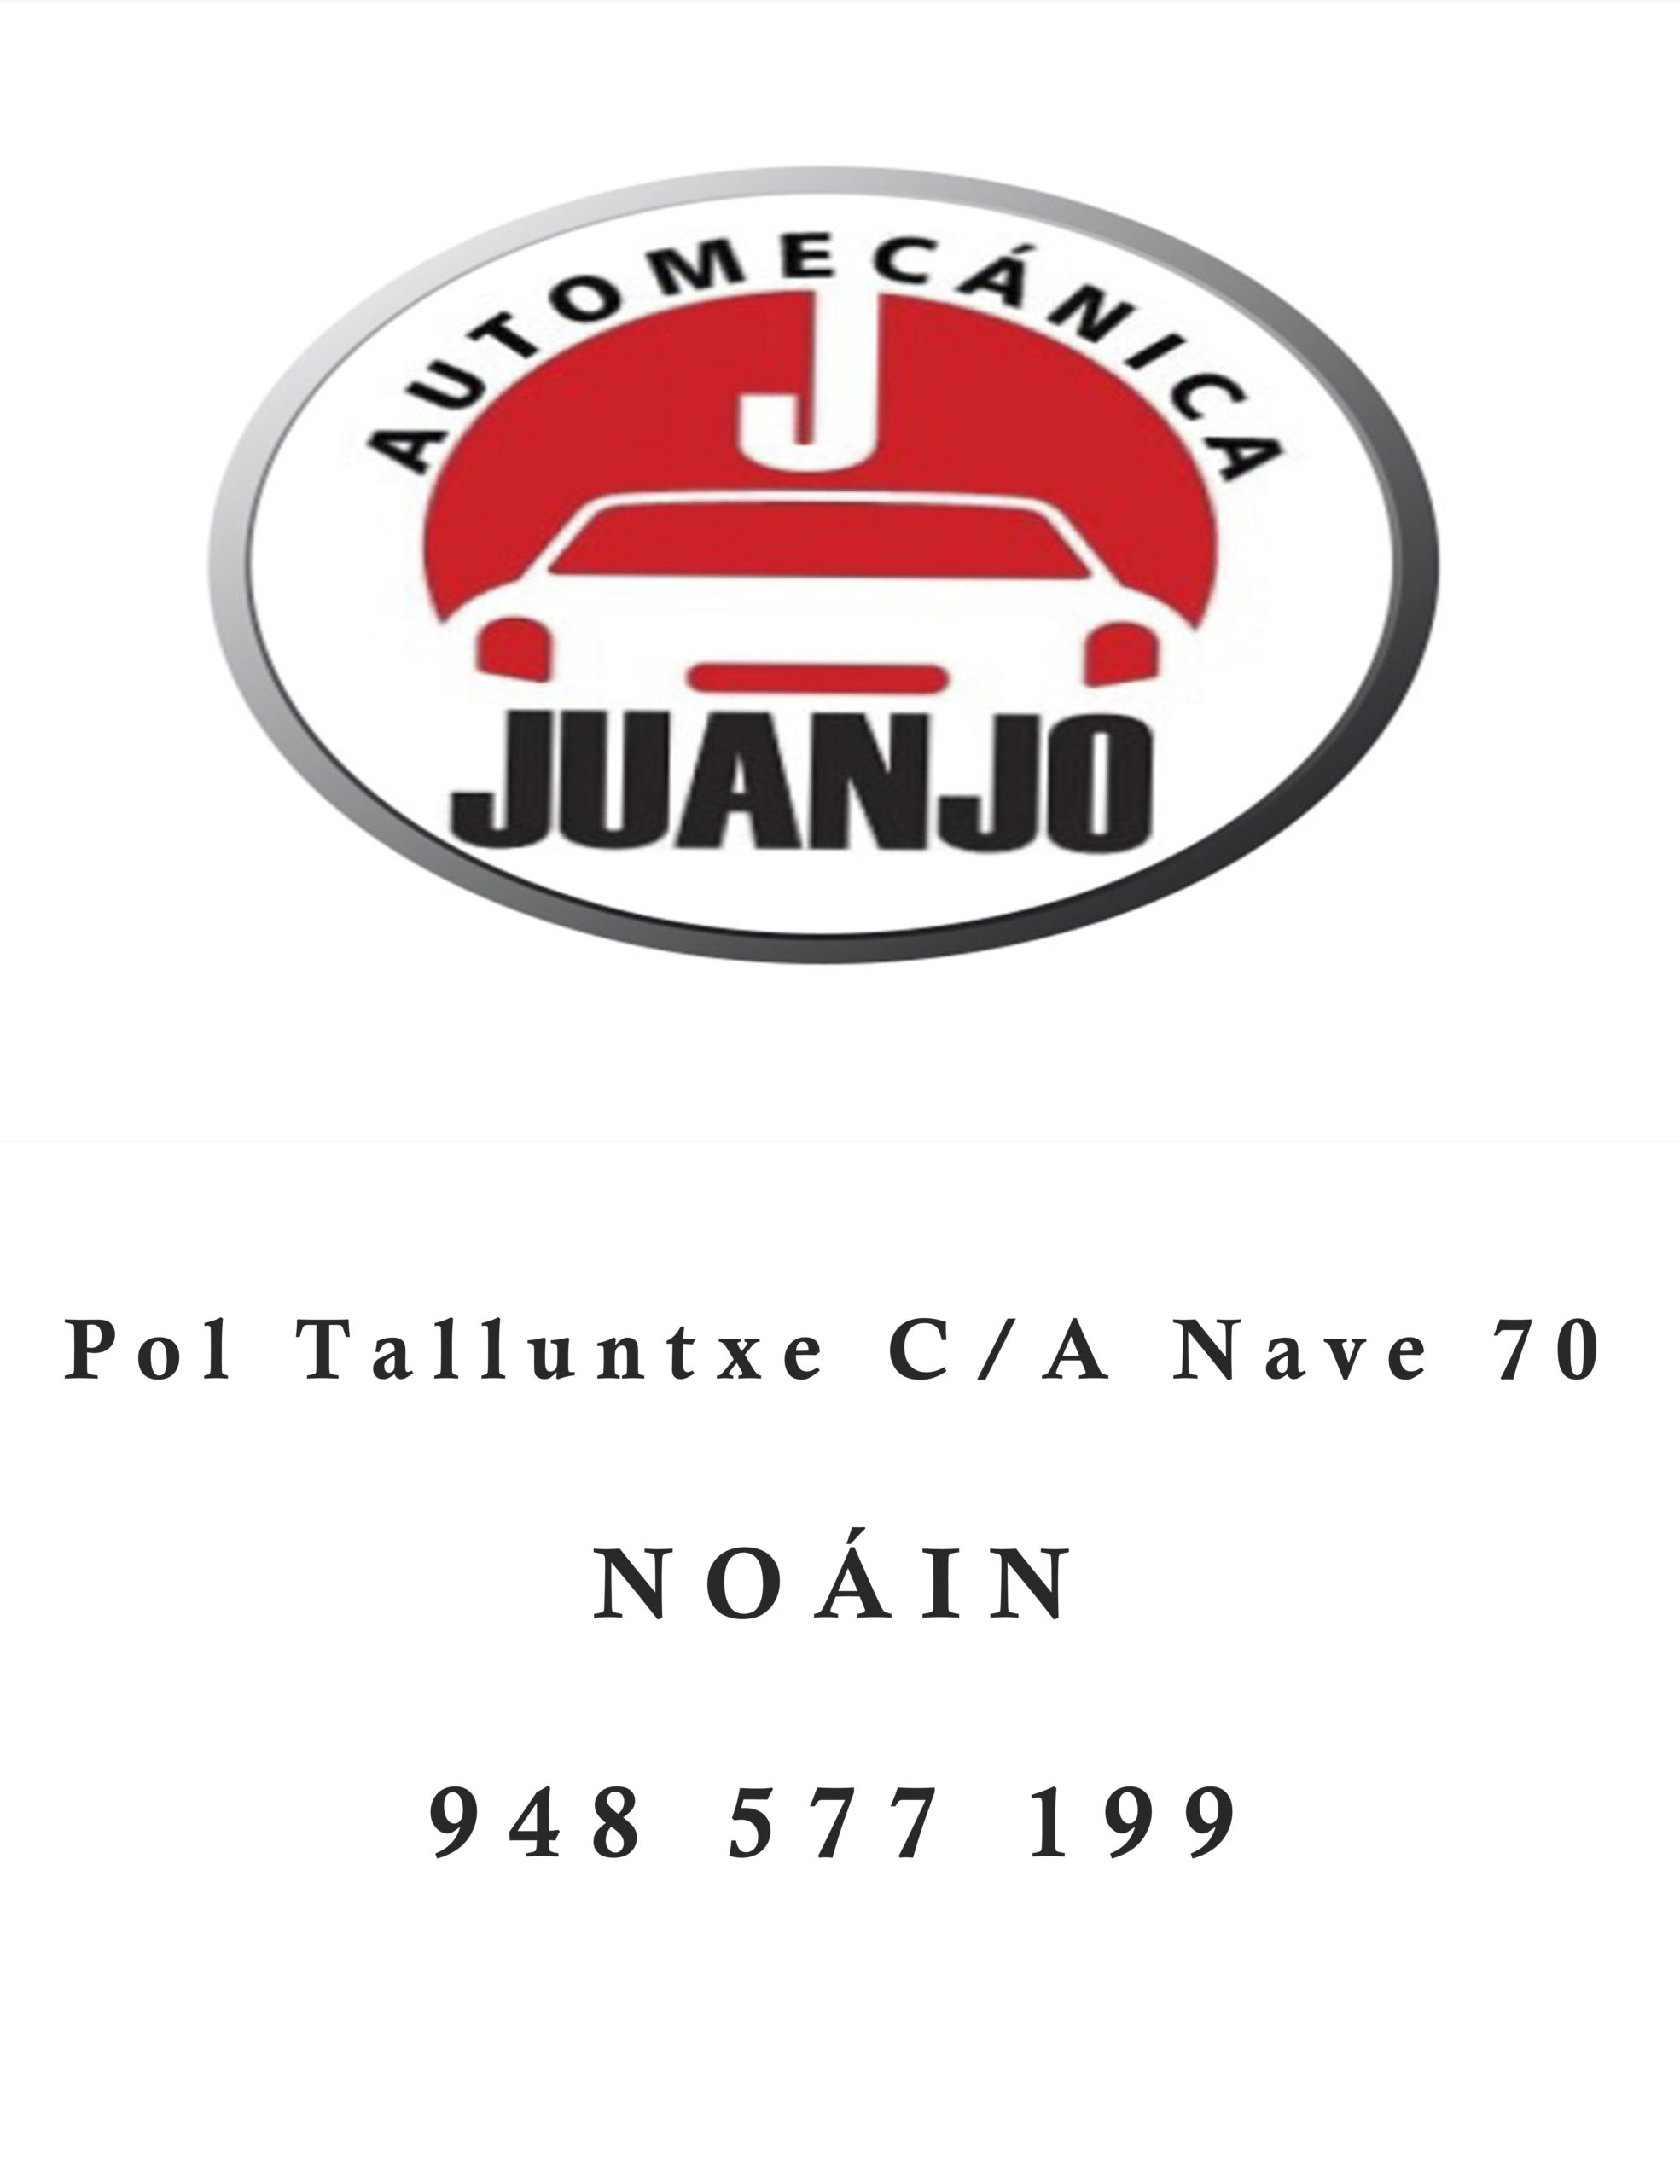 Automecánica Juanjo